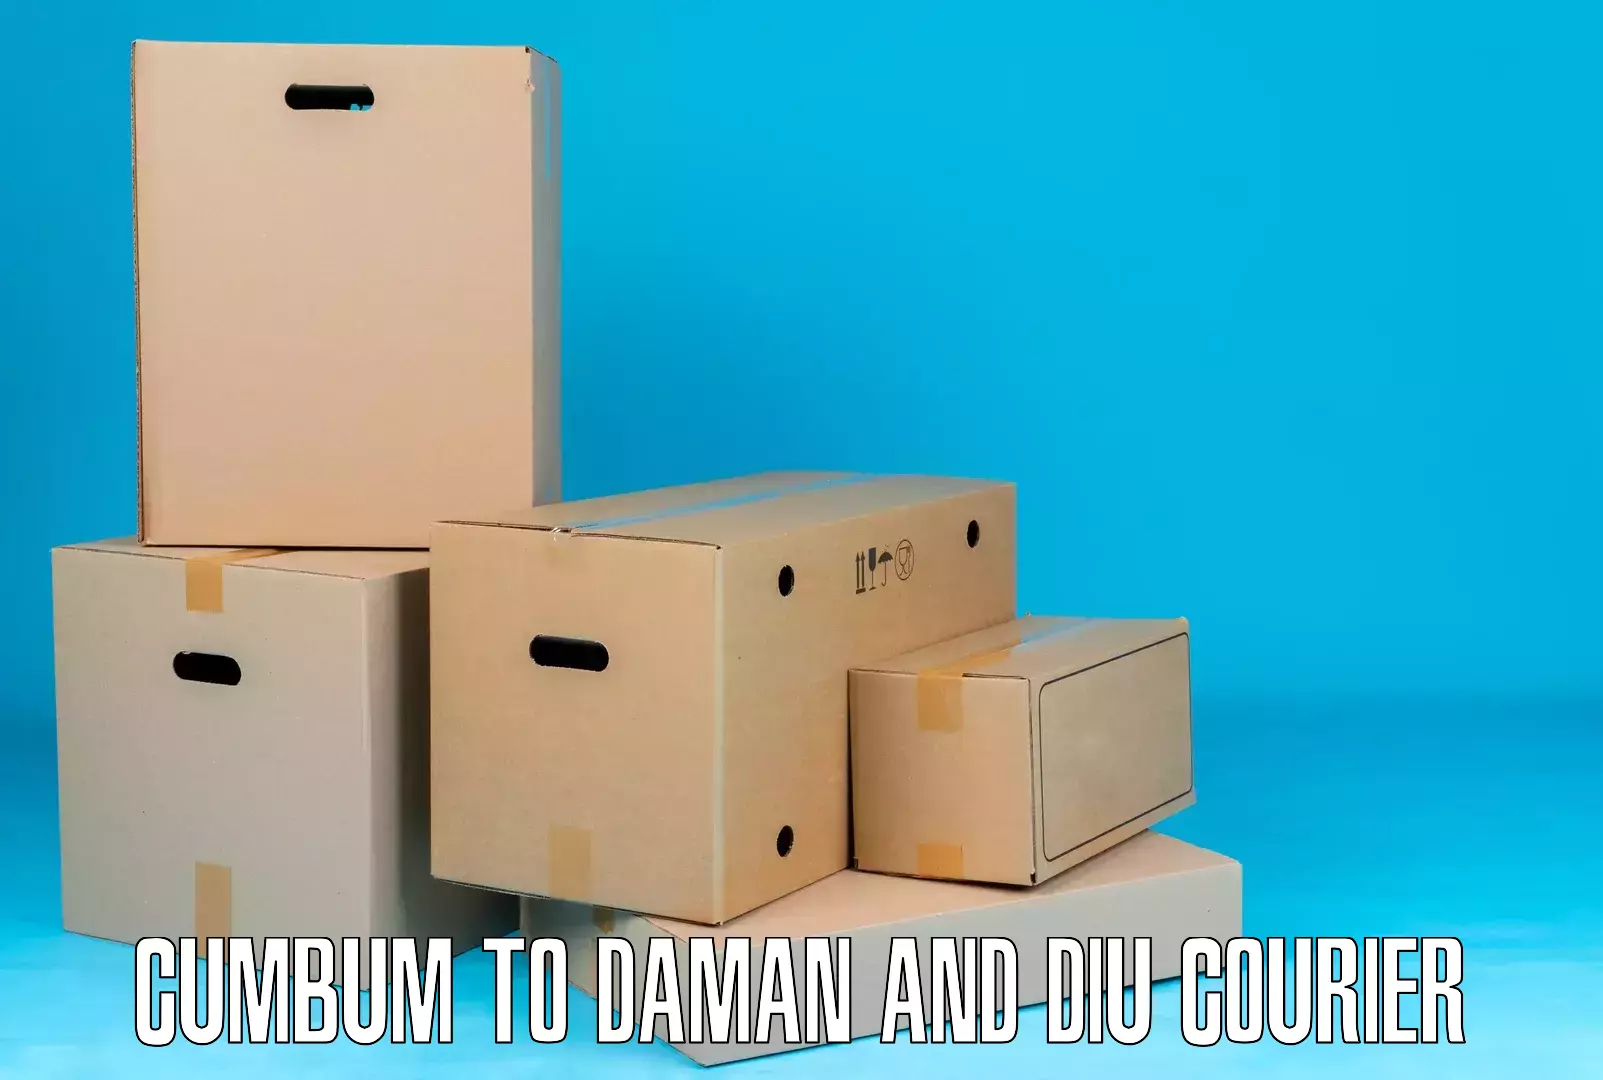 Efficient cargo handling Cumbum to Daman and Diu